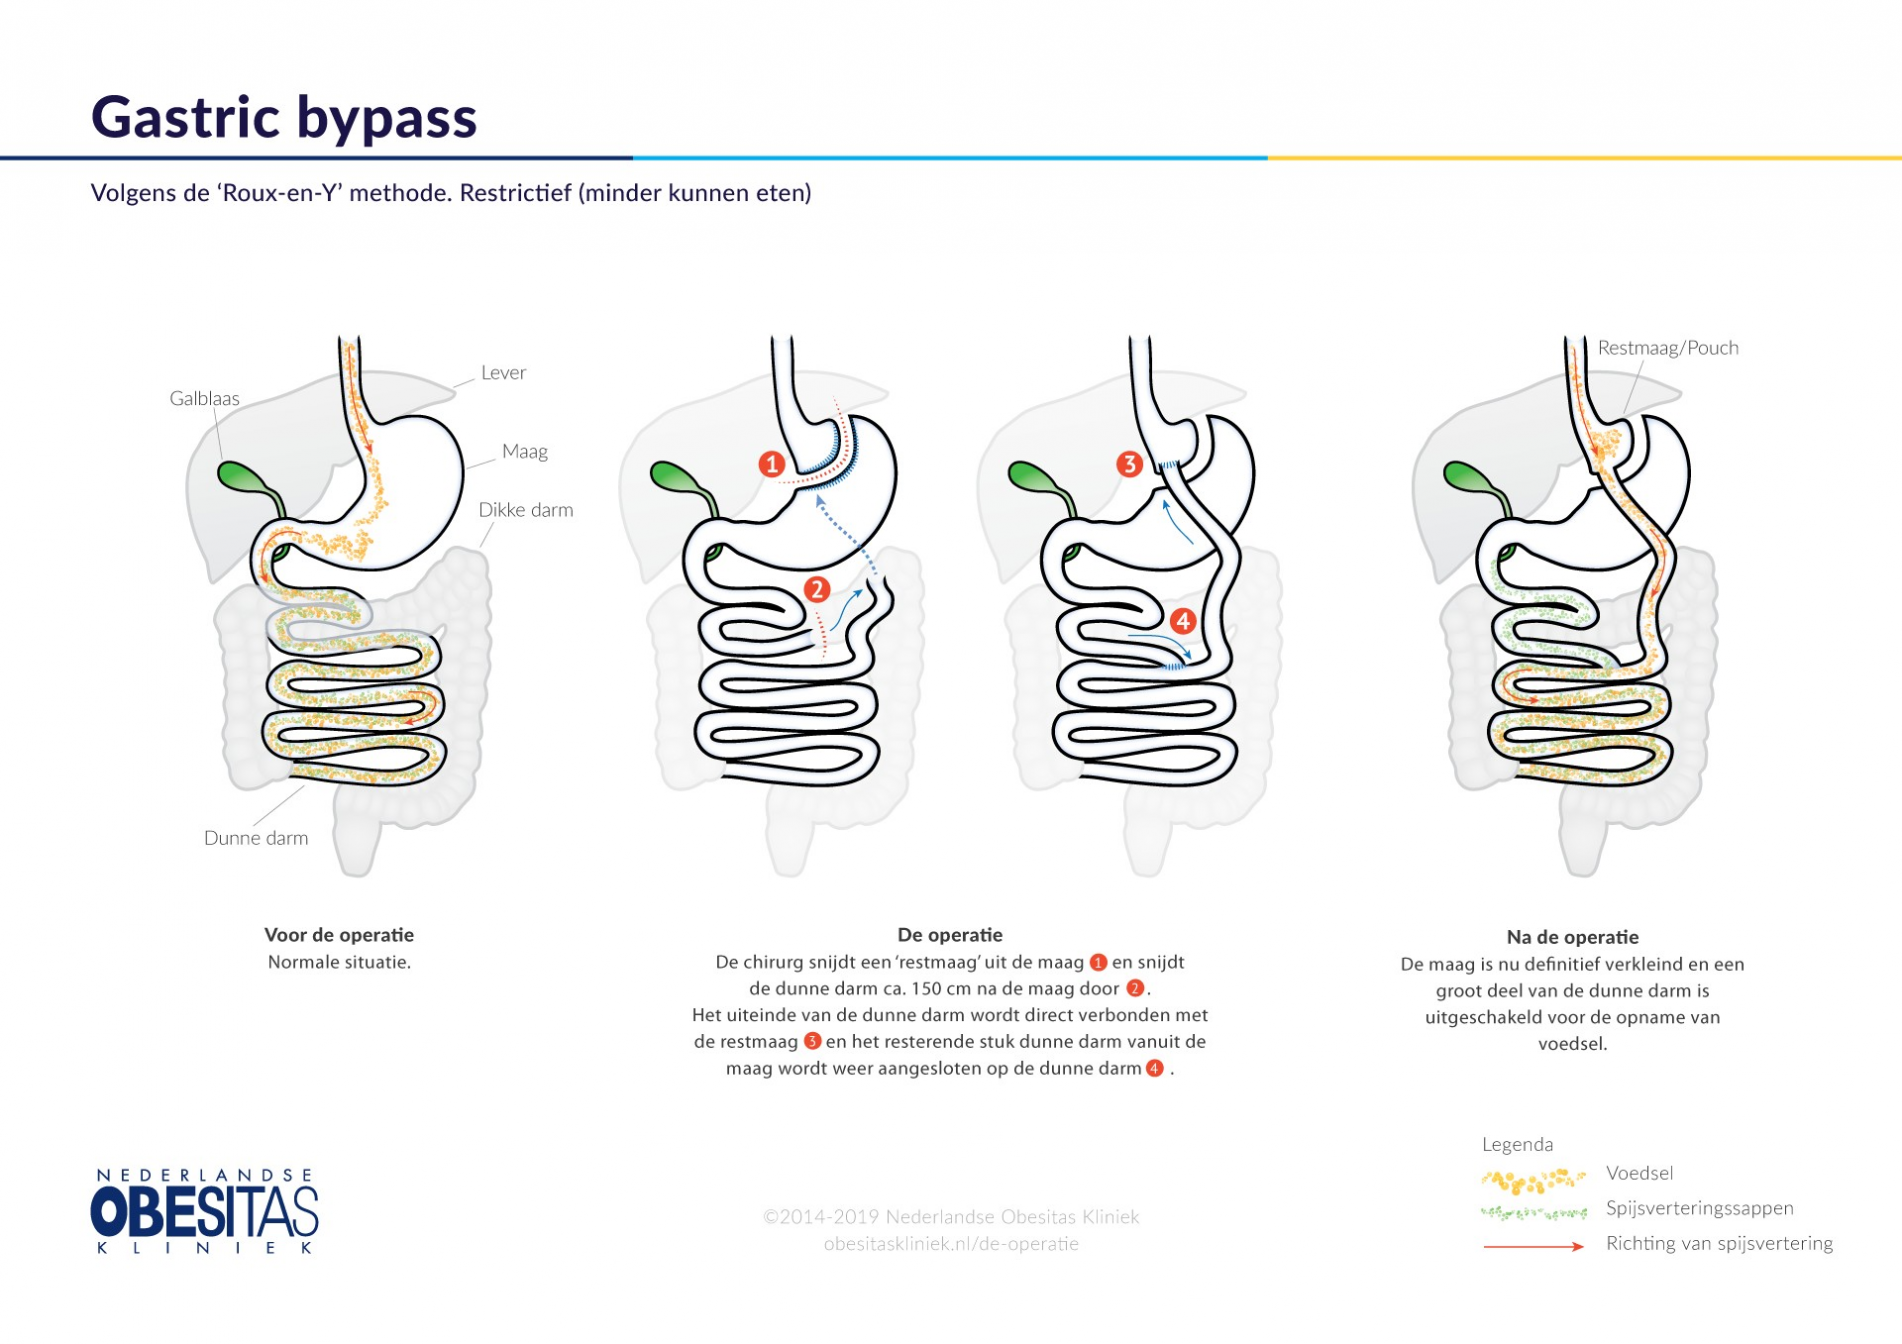 Figuur 1: De Gastric Bypass operatie, volgens de Roux-en-Y methode, in het kort